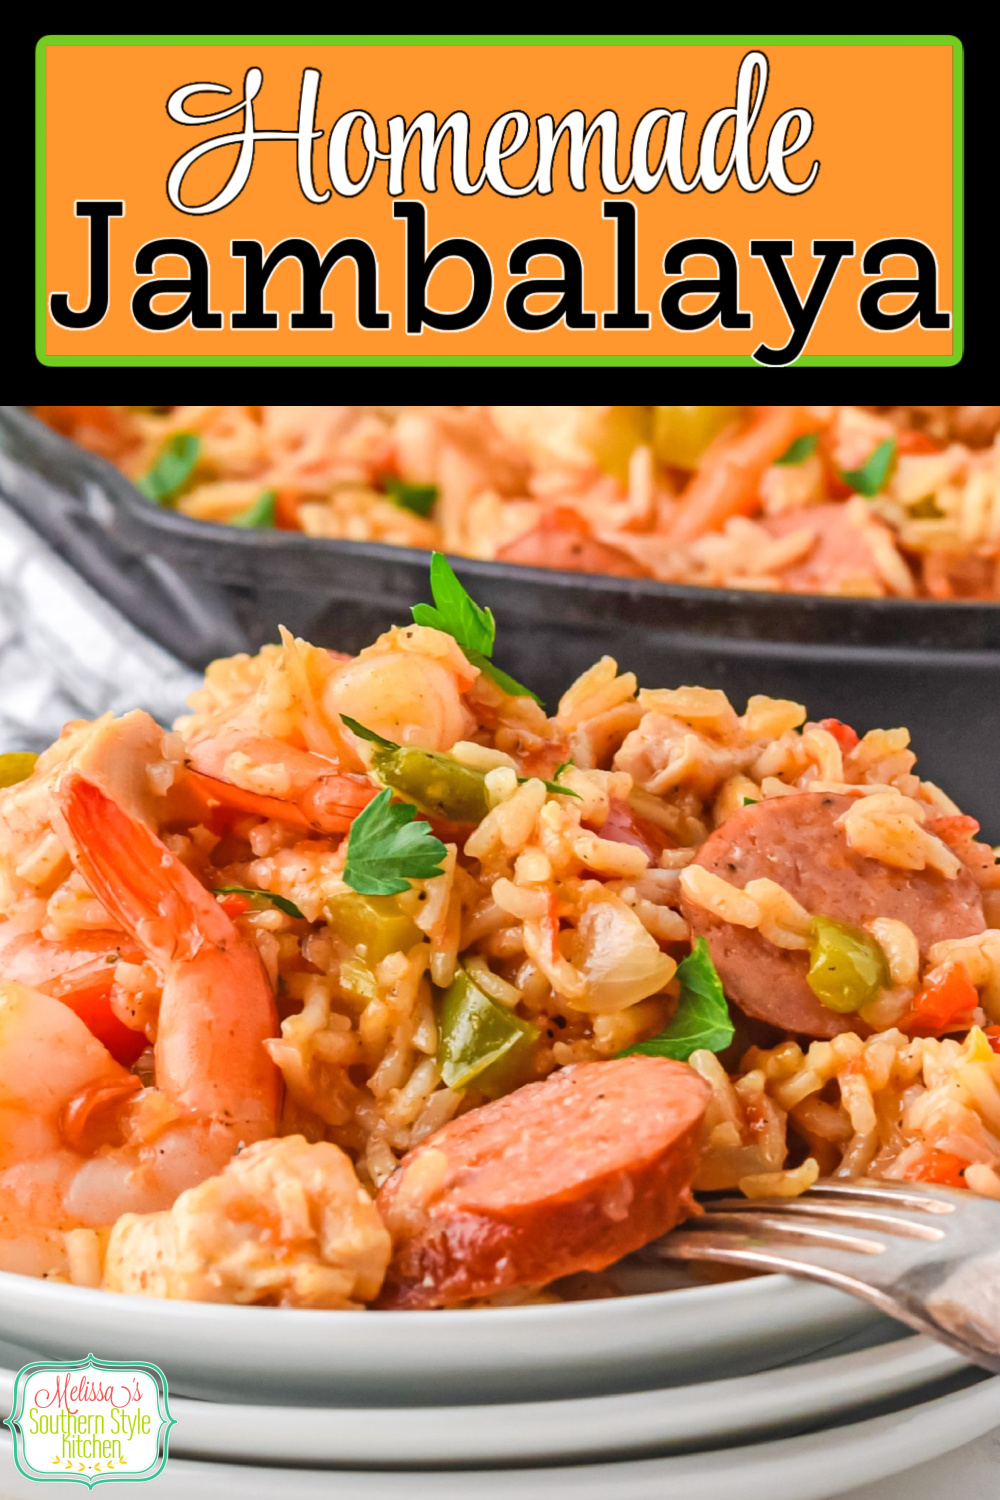 This homemade Jambalaya recipe makes a flavor packed one dish meal #jambalaya #creolerecipes #cajunfood #easyjambalayarecipe #rice #easyricerecipes #creolejambalaya via @melissasssk